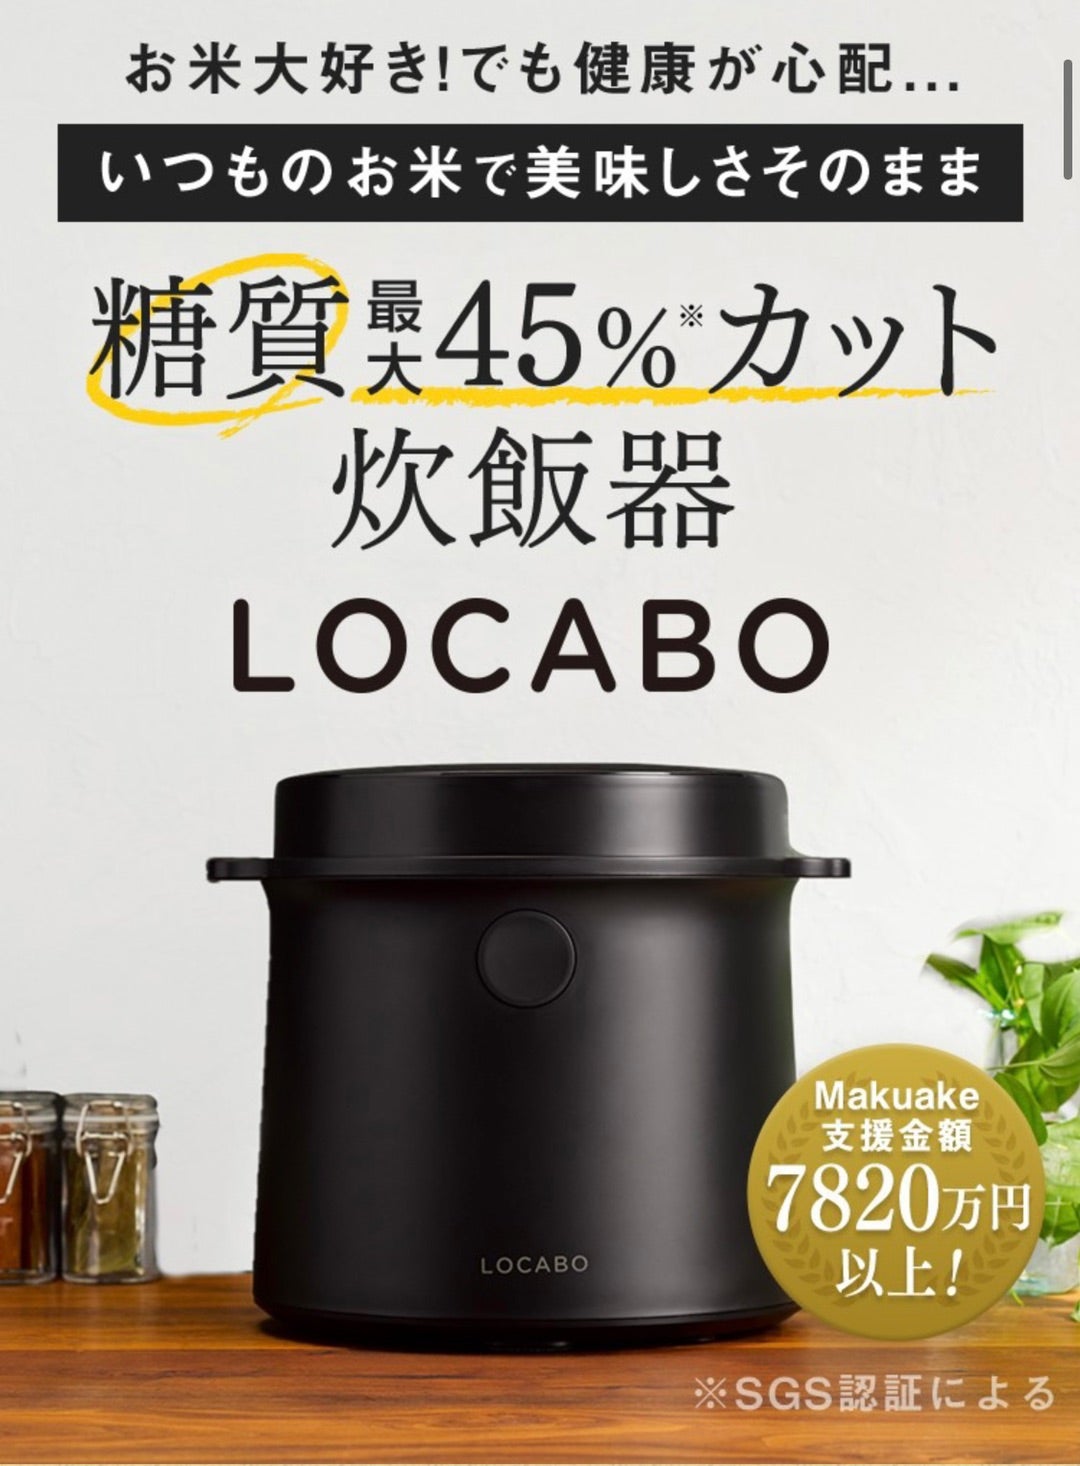 糖質カット炊飯器LOCABO ストレッチクリニック ブログ